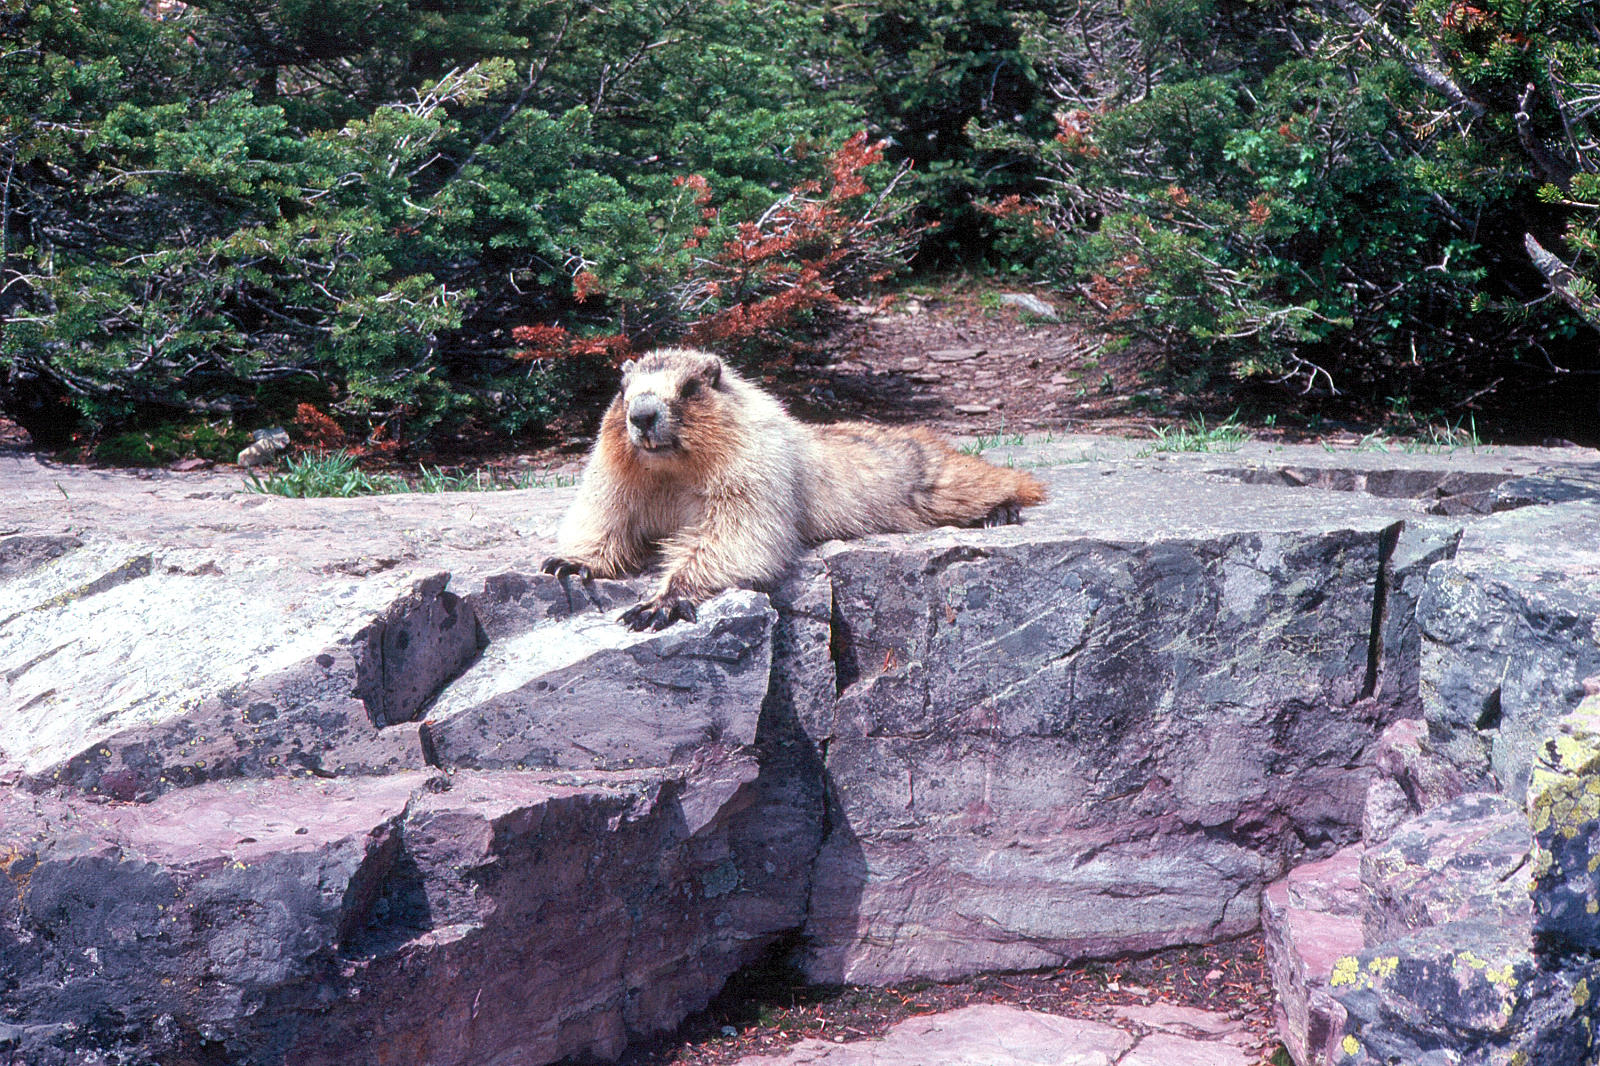 Marmot - A closer look